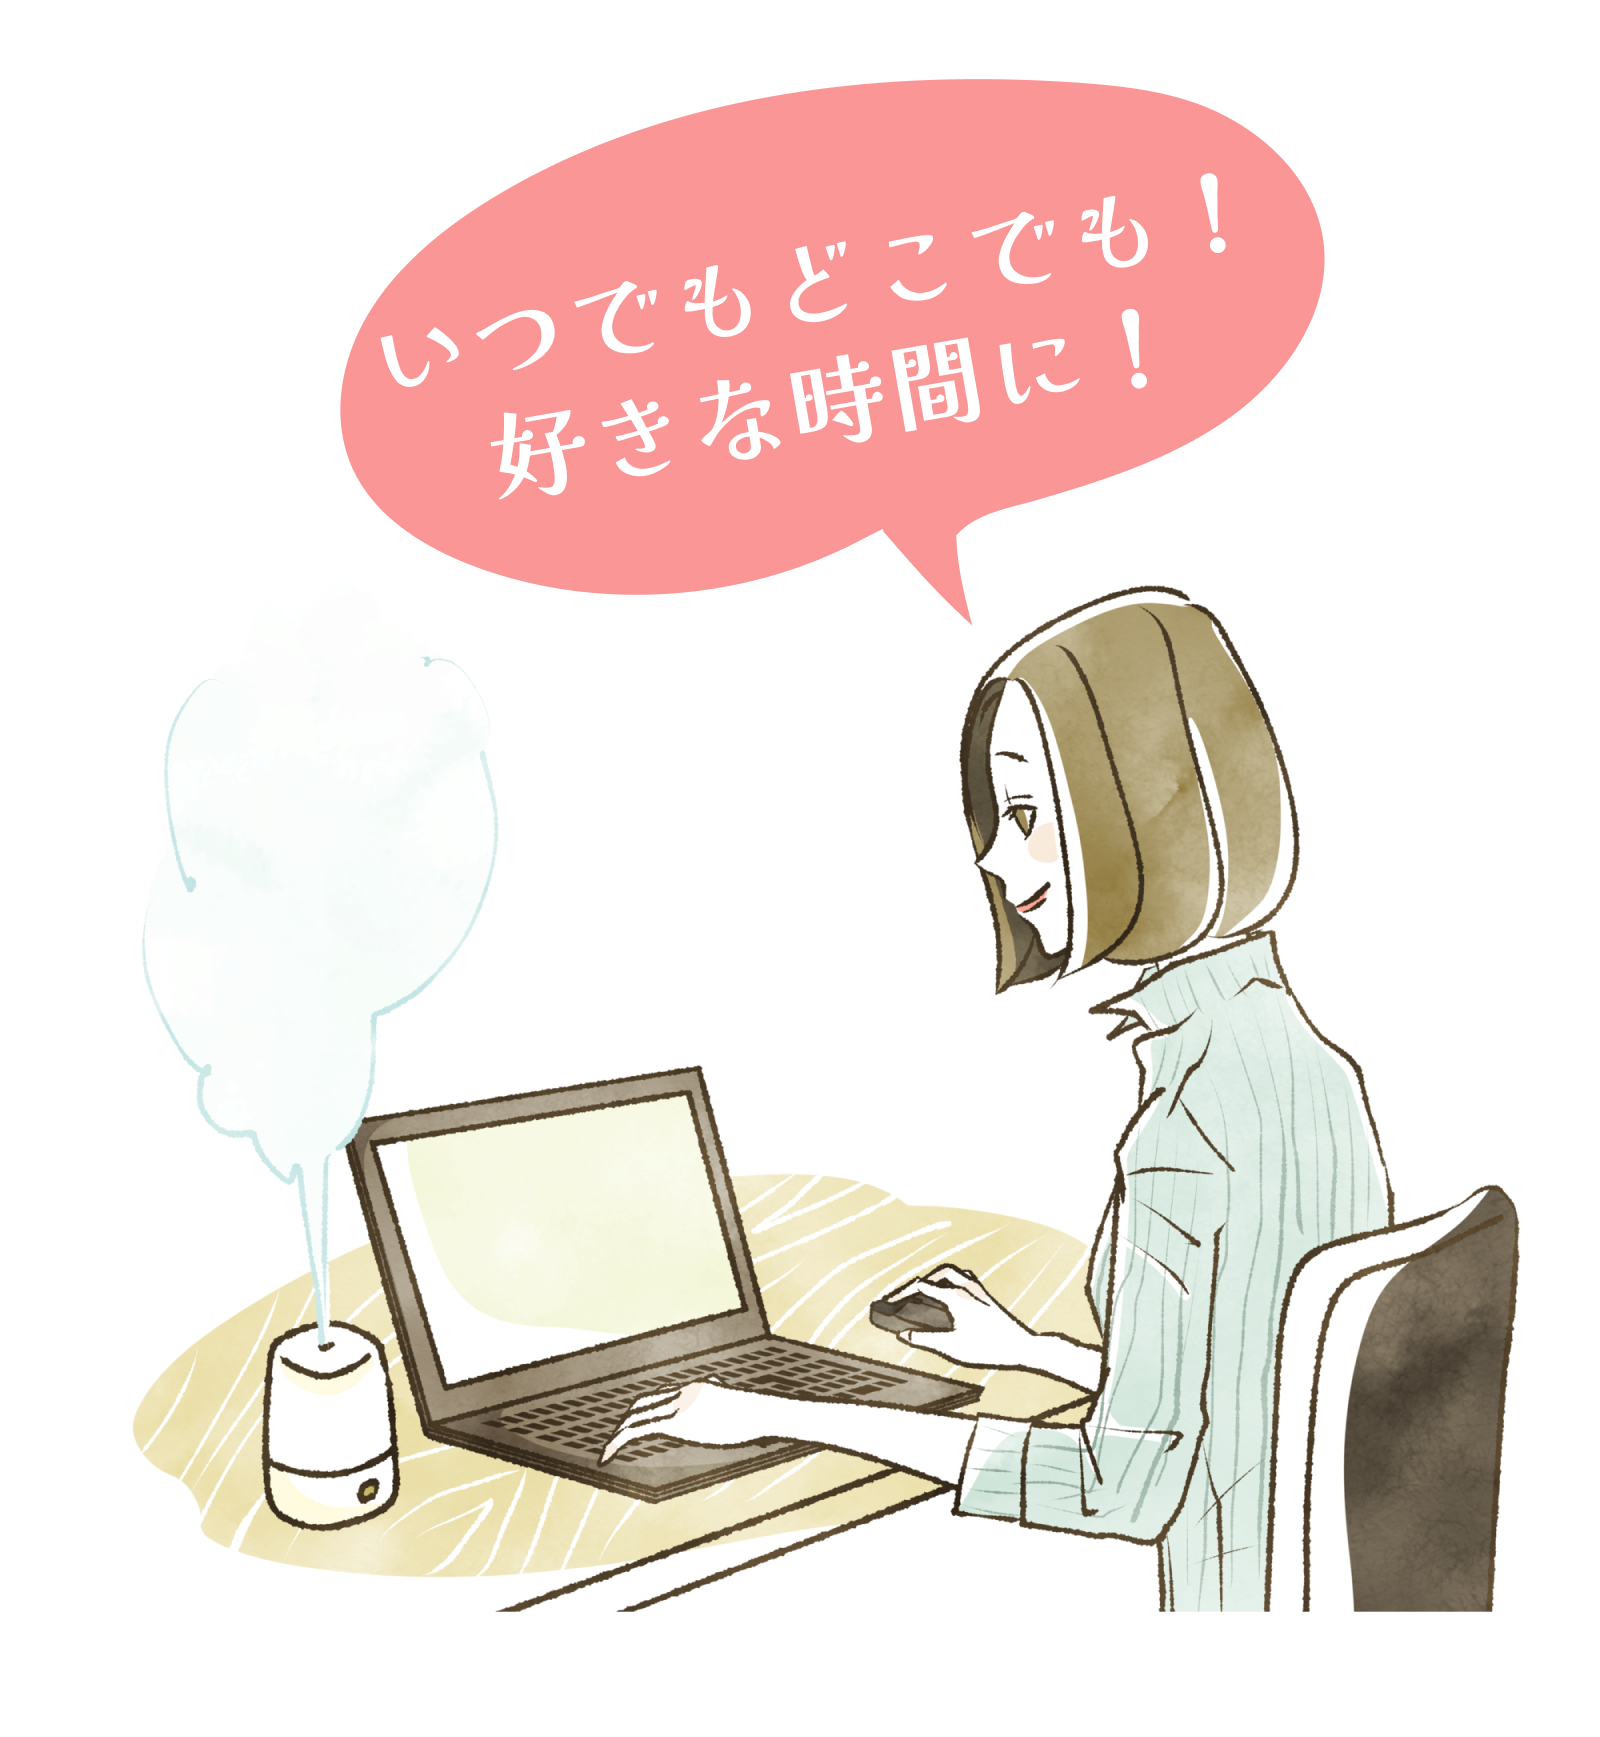 女性が机に座ってパソコンで作業しているイラストです